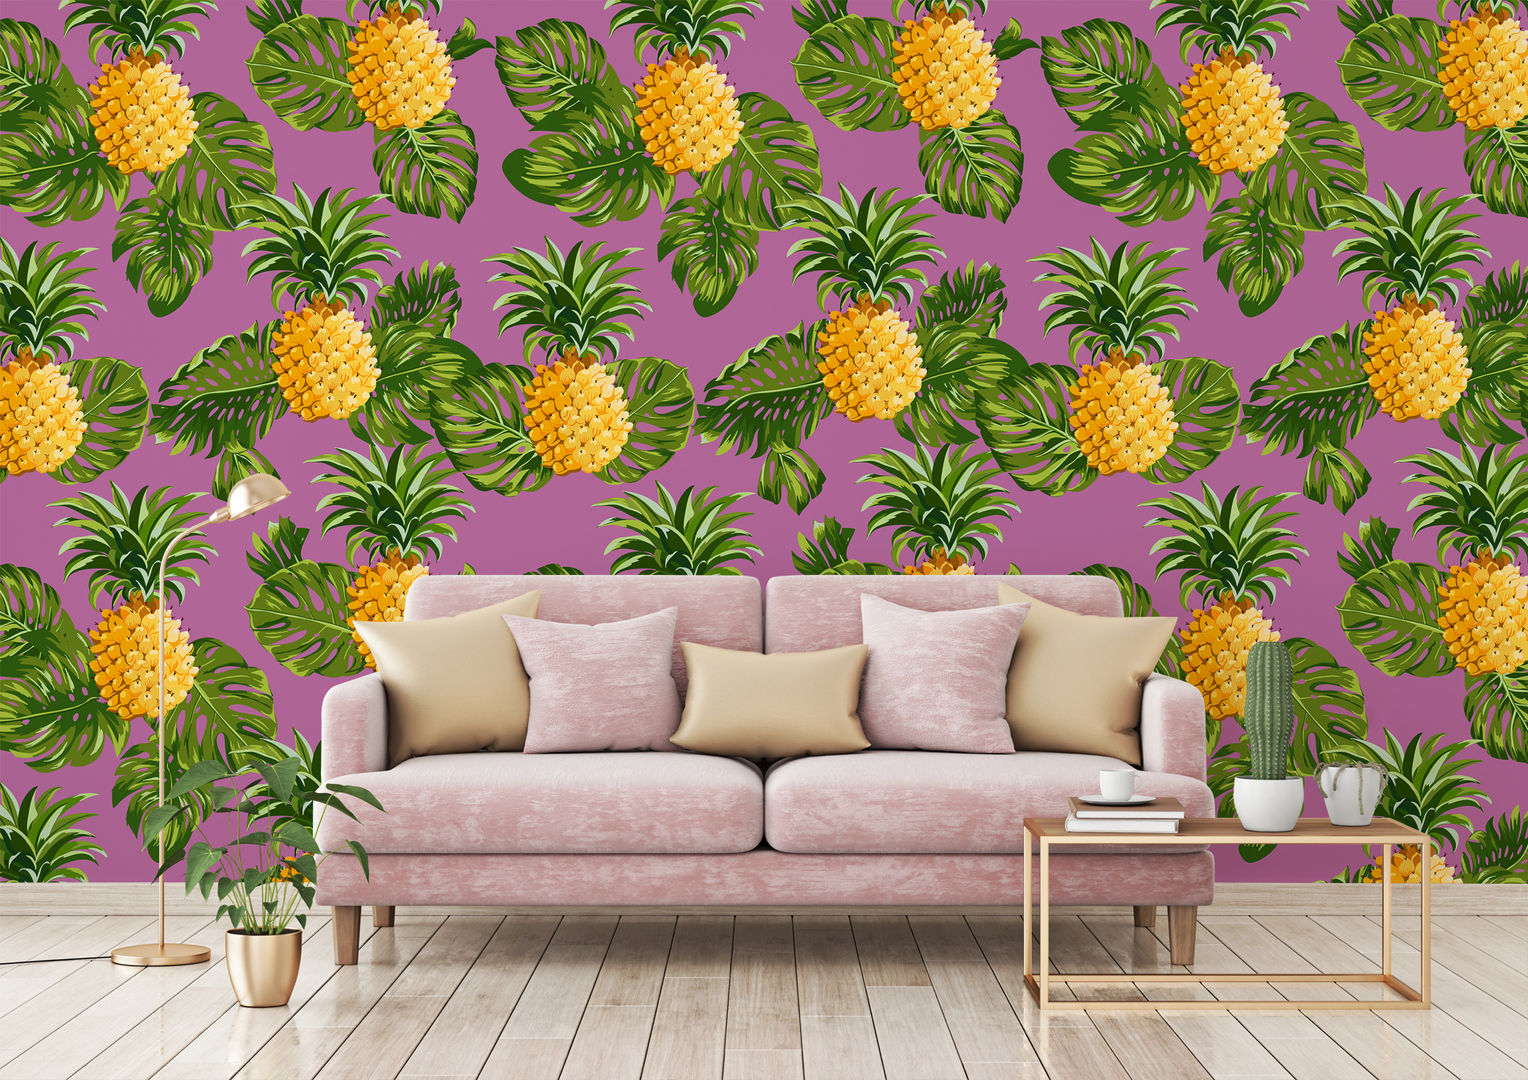 HYPNOTIC PINEAPPLES Pixers Phòng khách phong cách nhiệt đới Pixers,pink,pineapple,wallmural,wallpaper,tropical